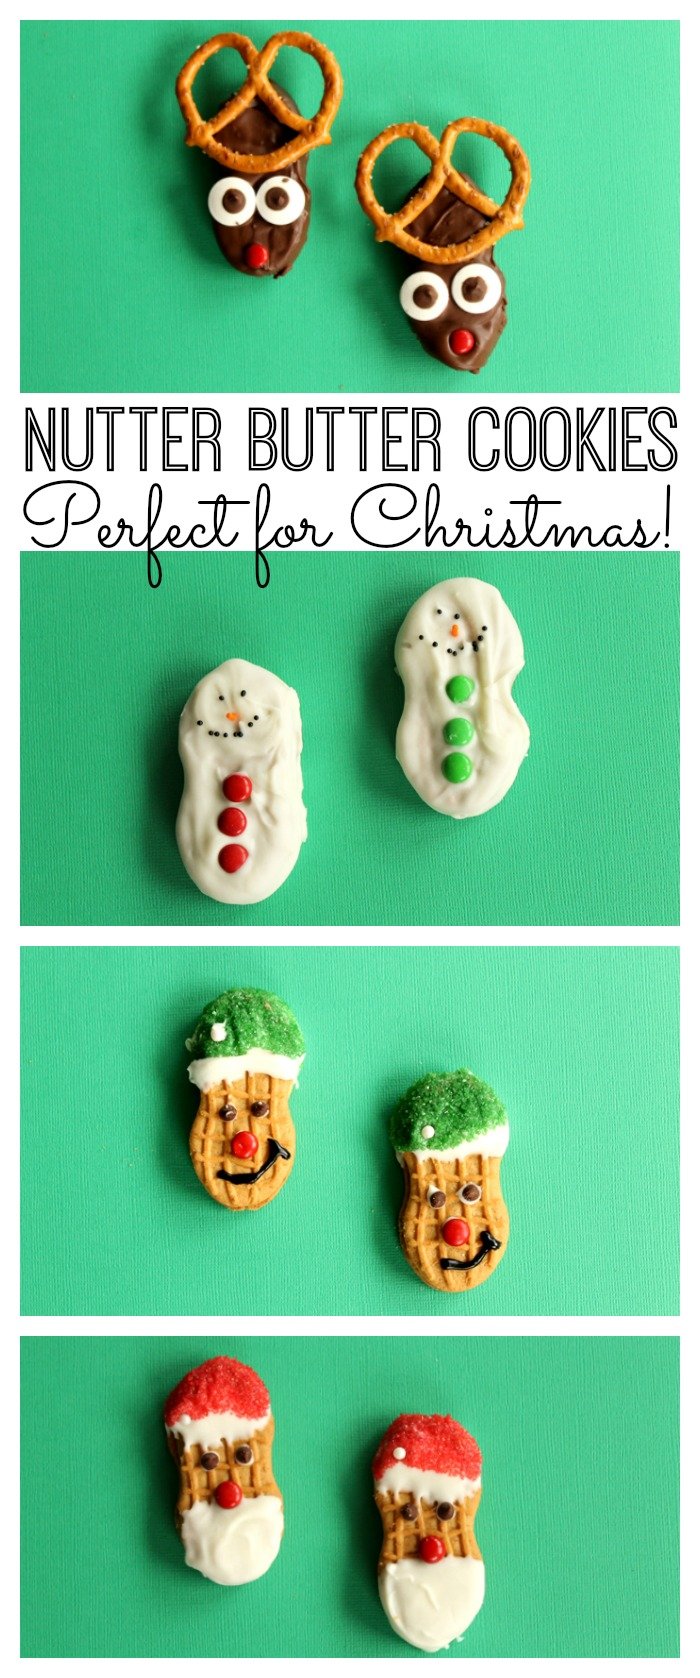 reindeer, santa clause, elf cookies, and snowman cookies on green surfaces